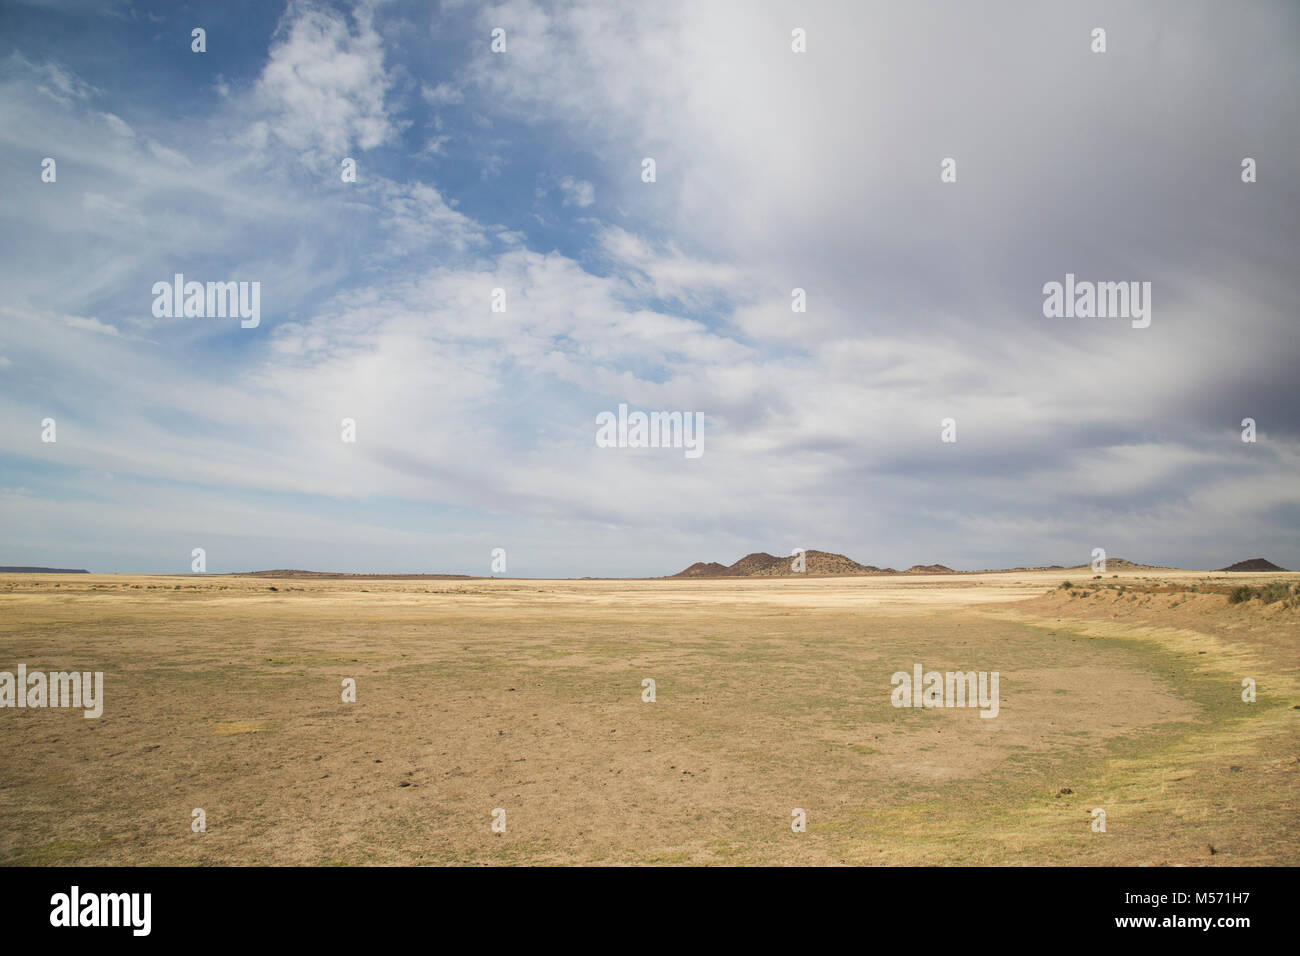 Vista panorámica de una granja grande presa que está completamente seca a causa de la sequía en la zona Foto de stock